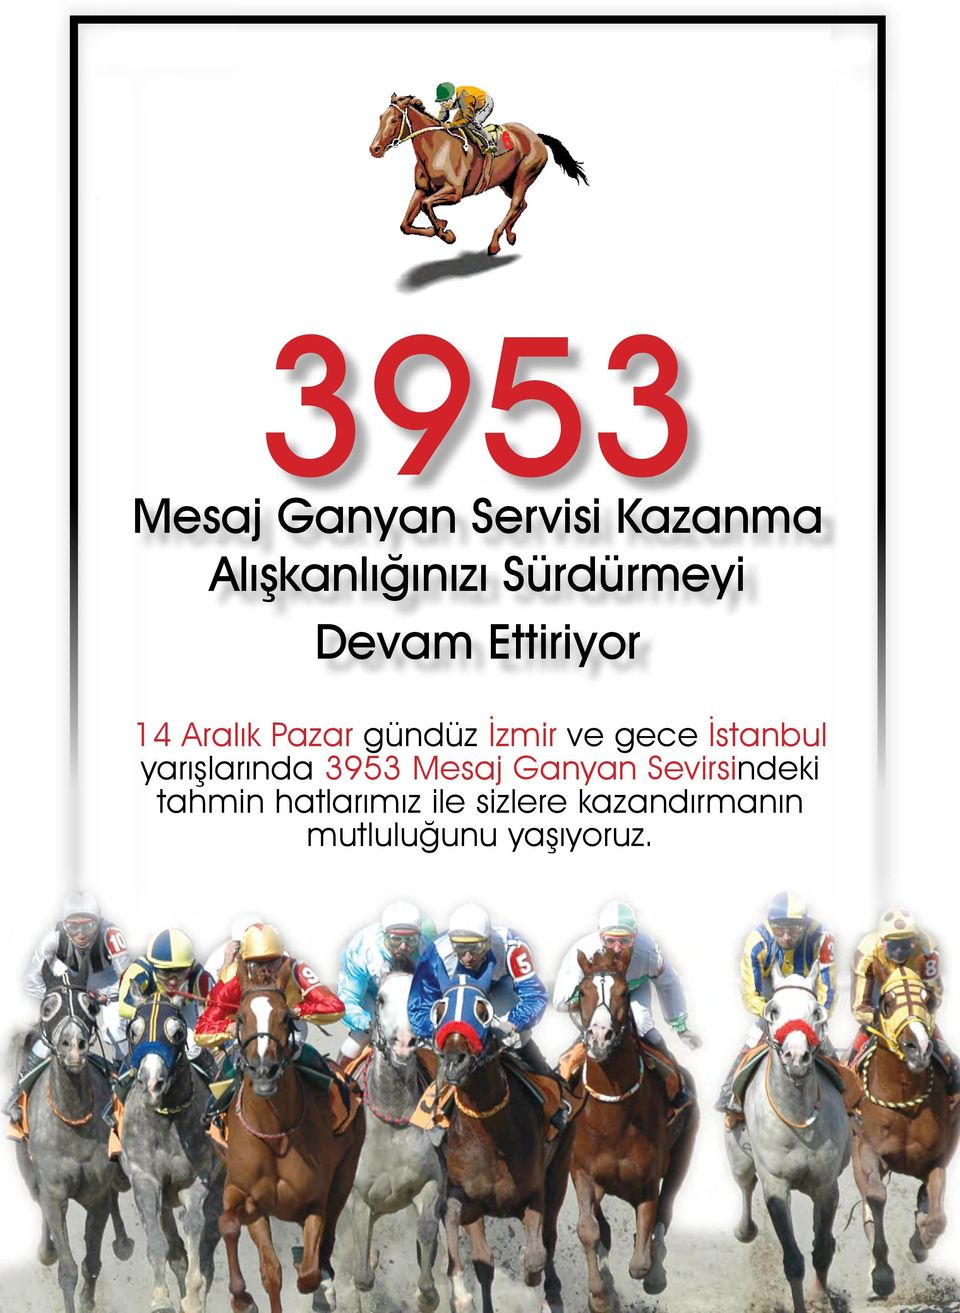 İstanbul yarışlarında Mesaj Ganyan Sevirsindeki tahmin